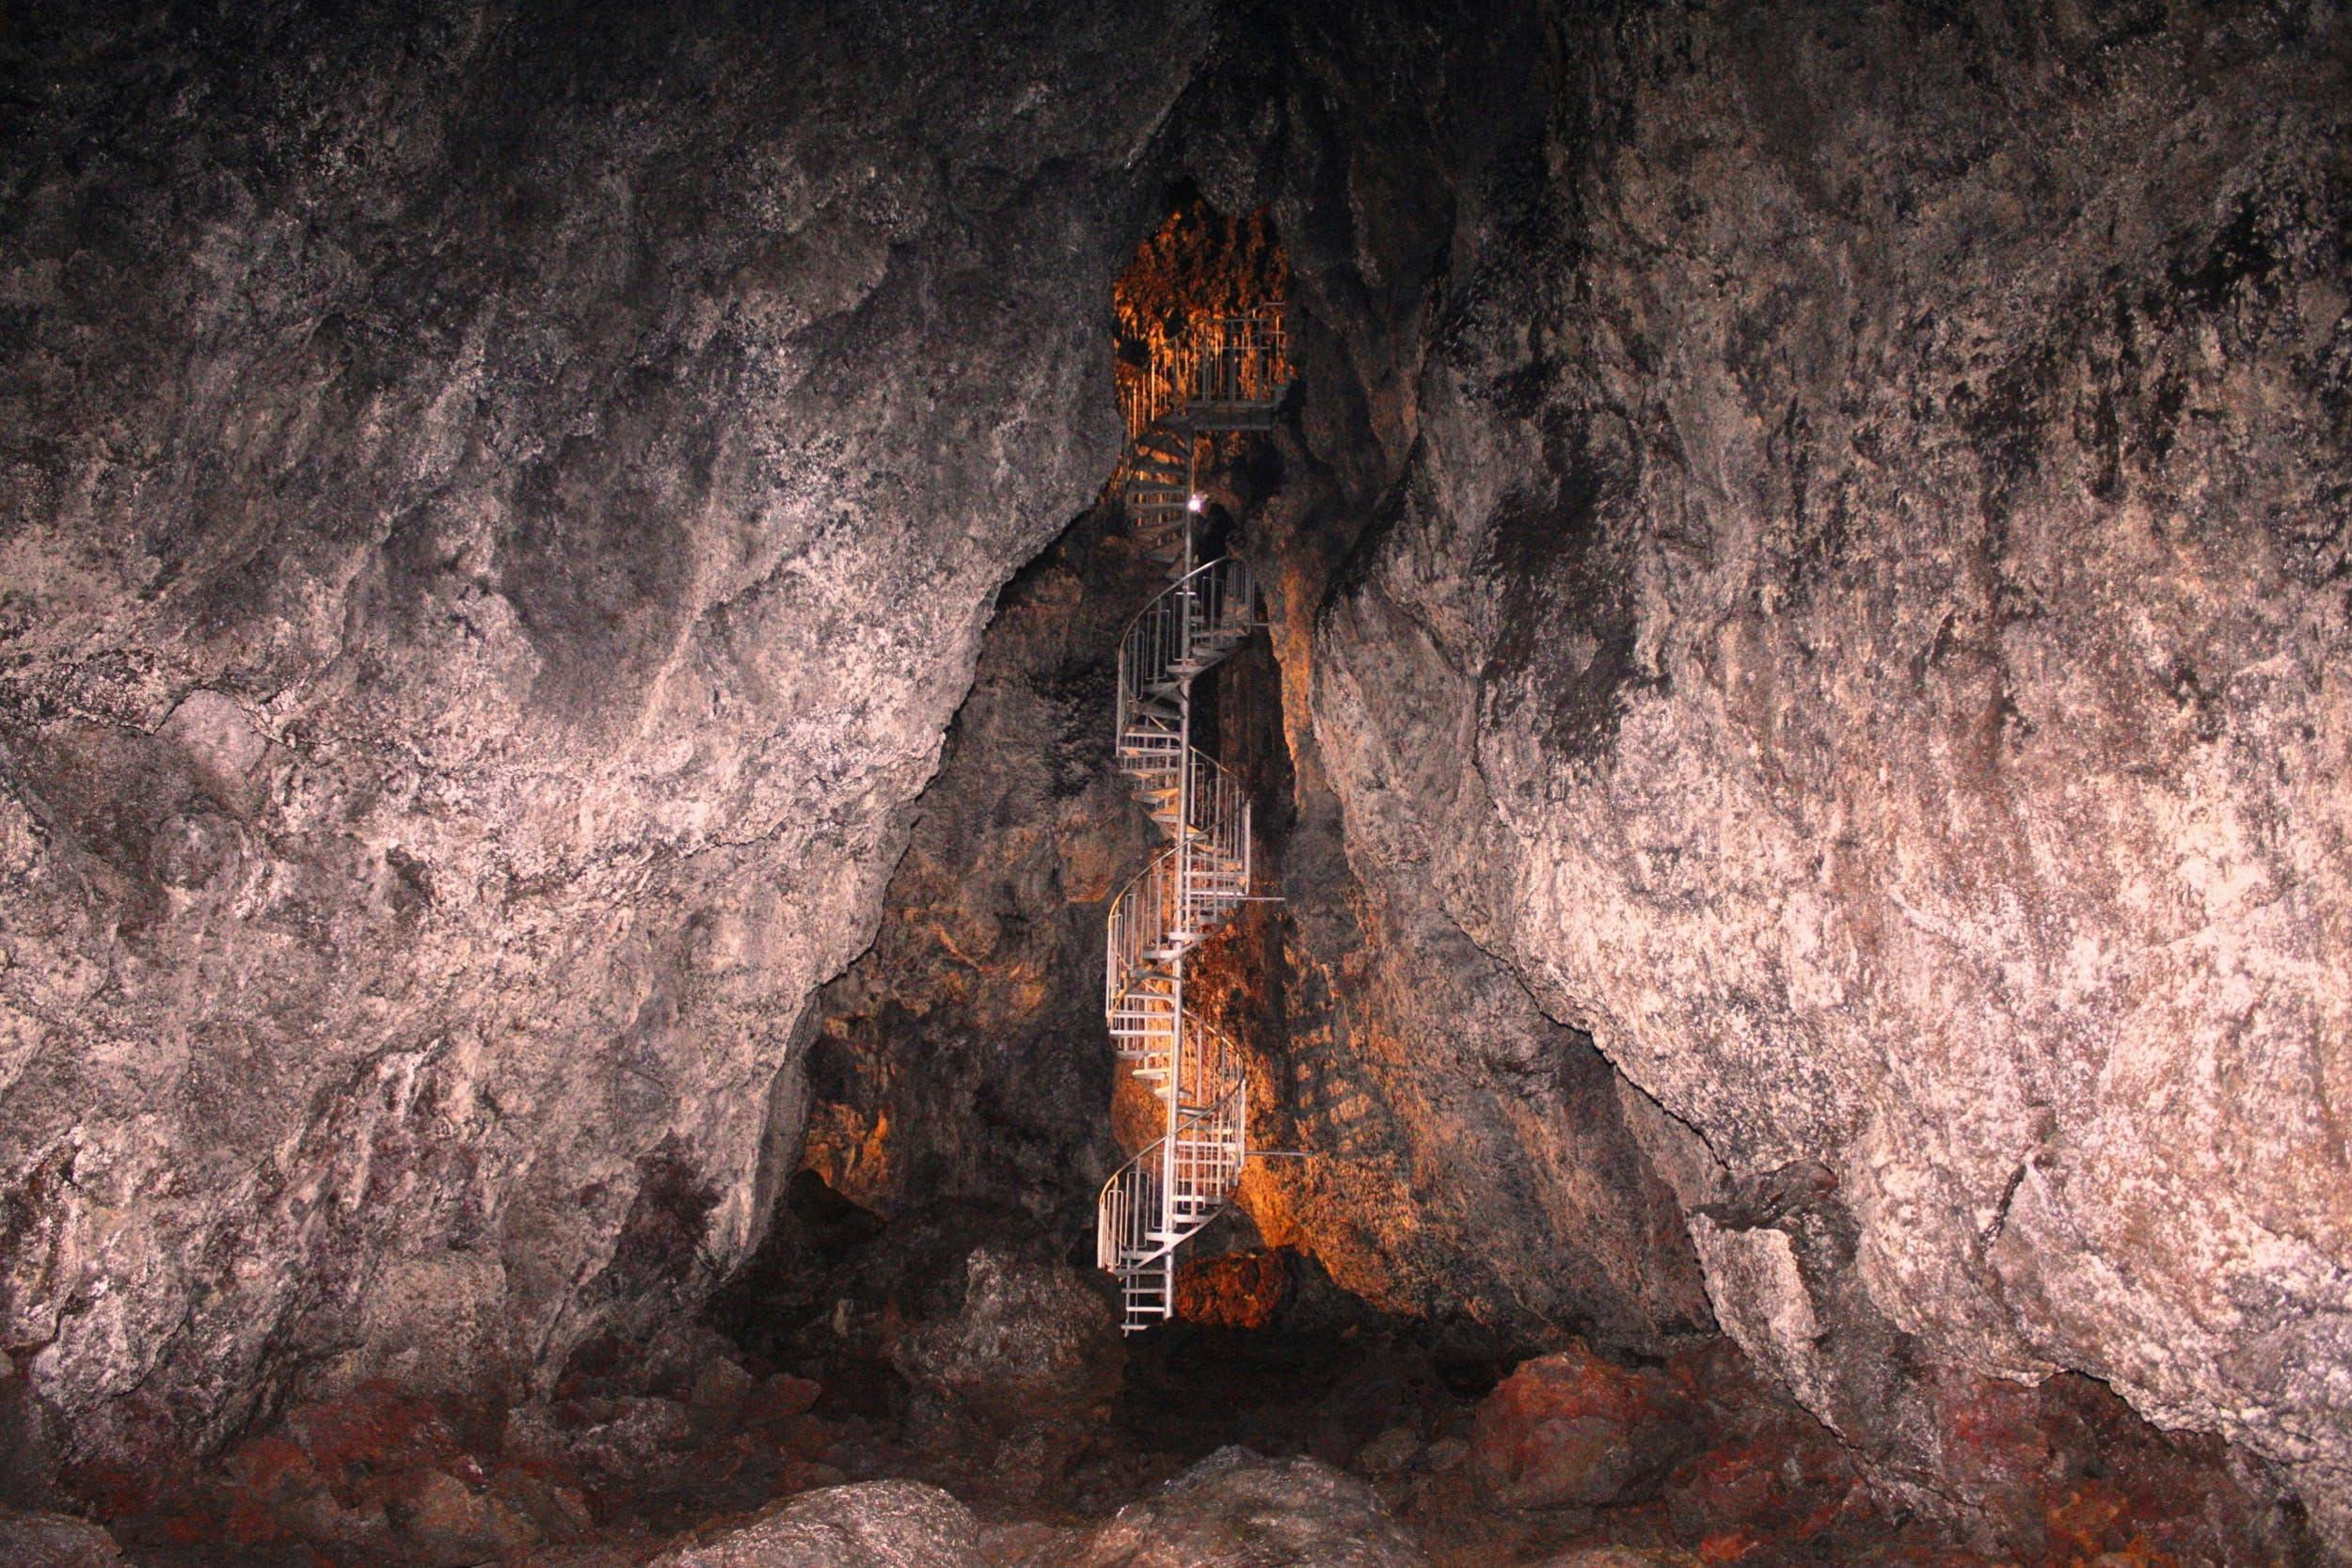 Staircase inside Vatnshellir lava tube cave